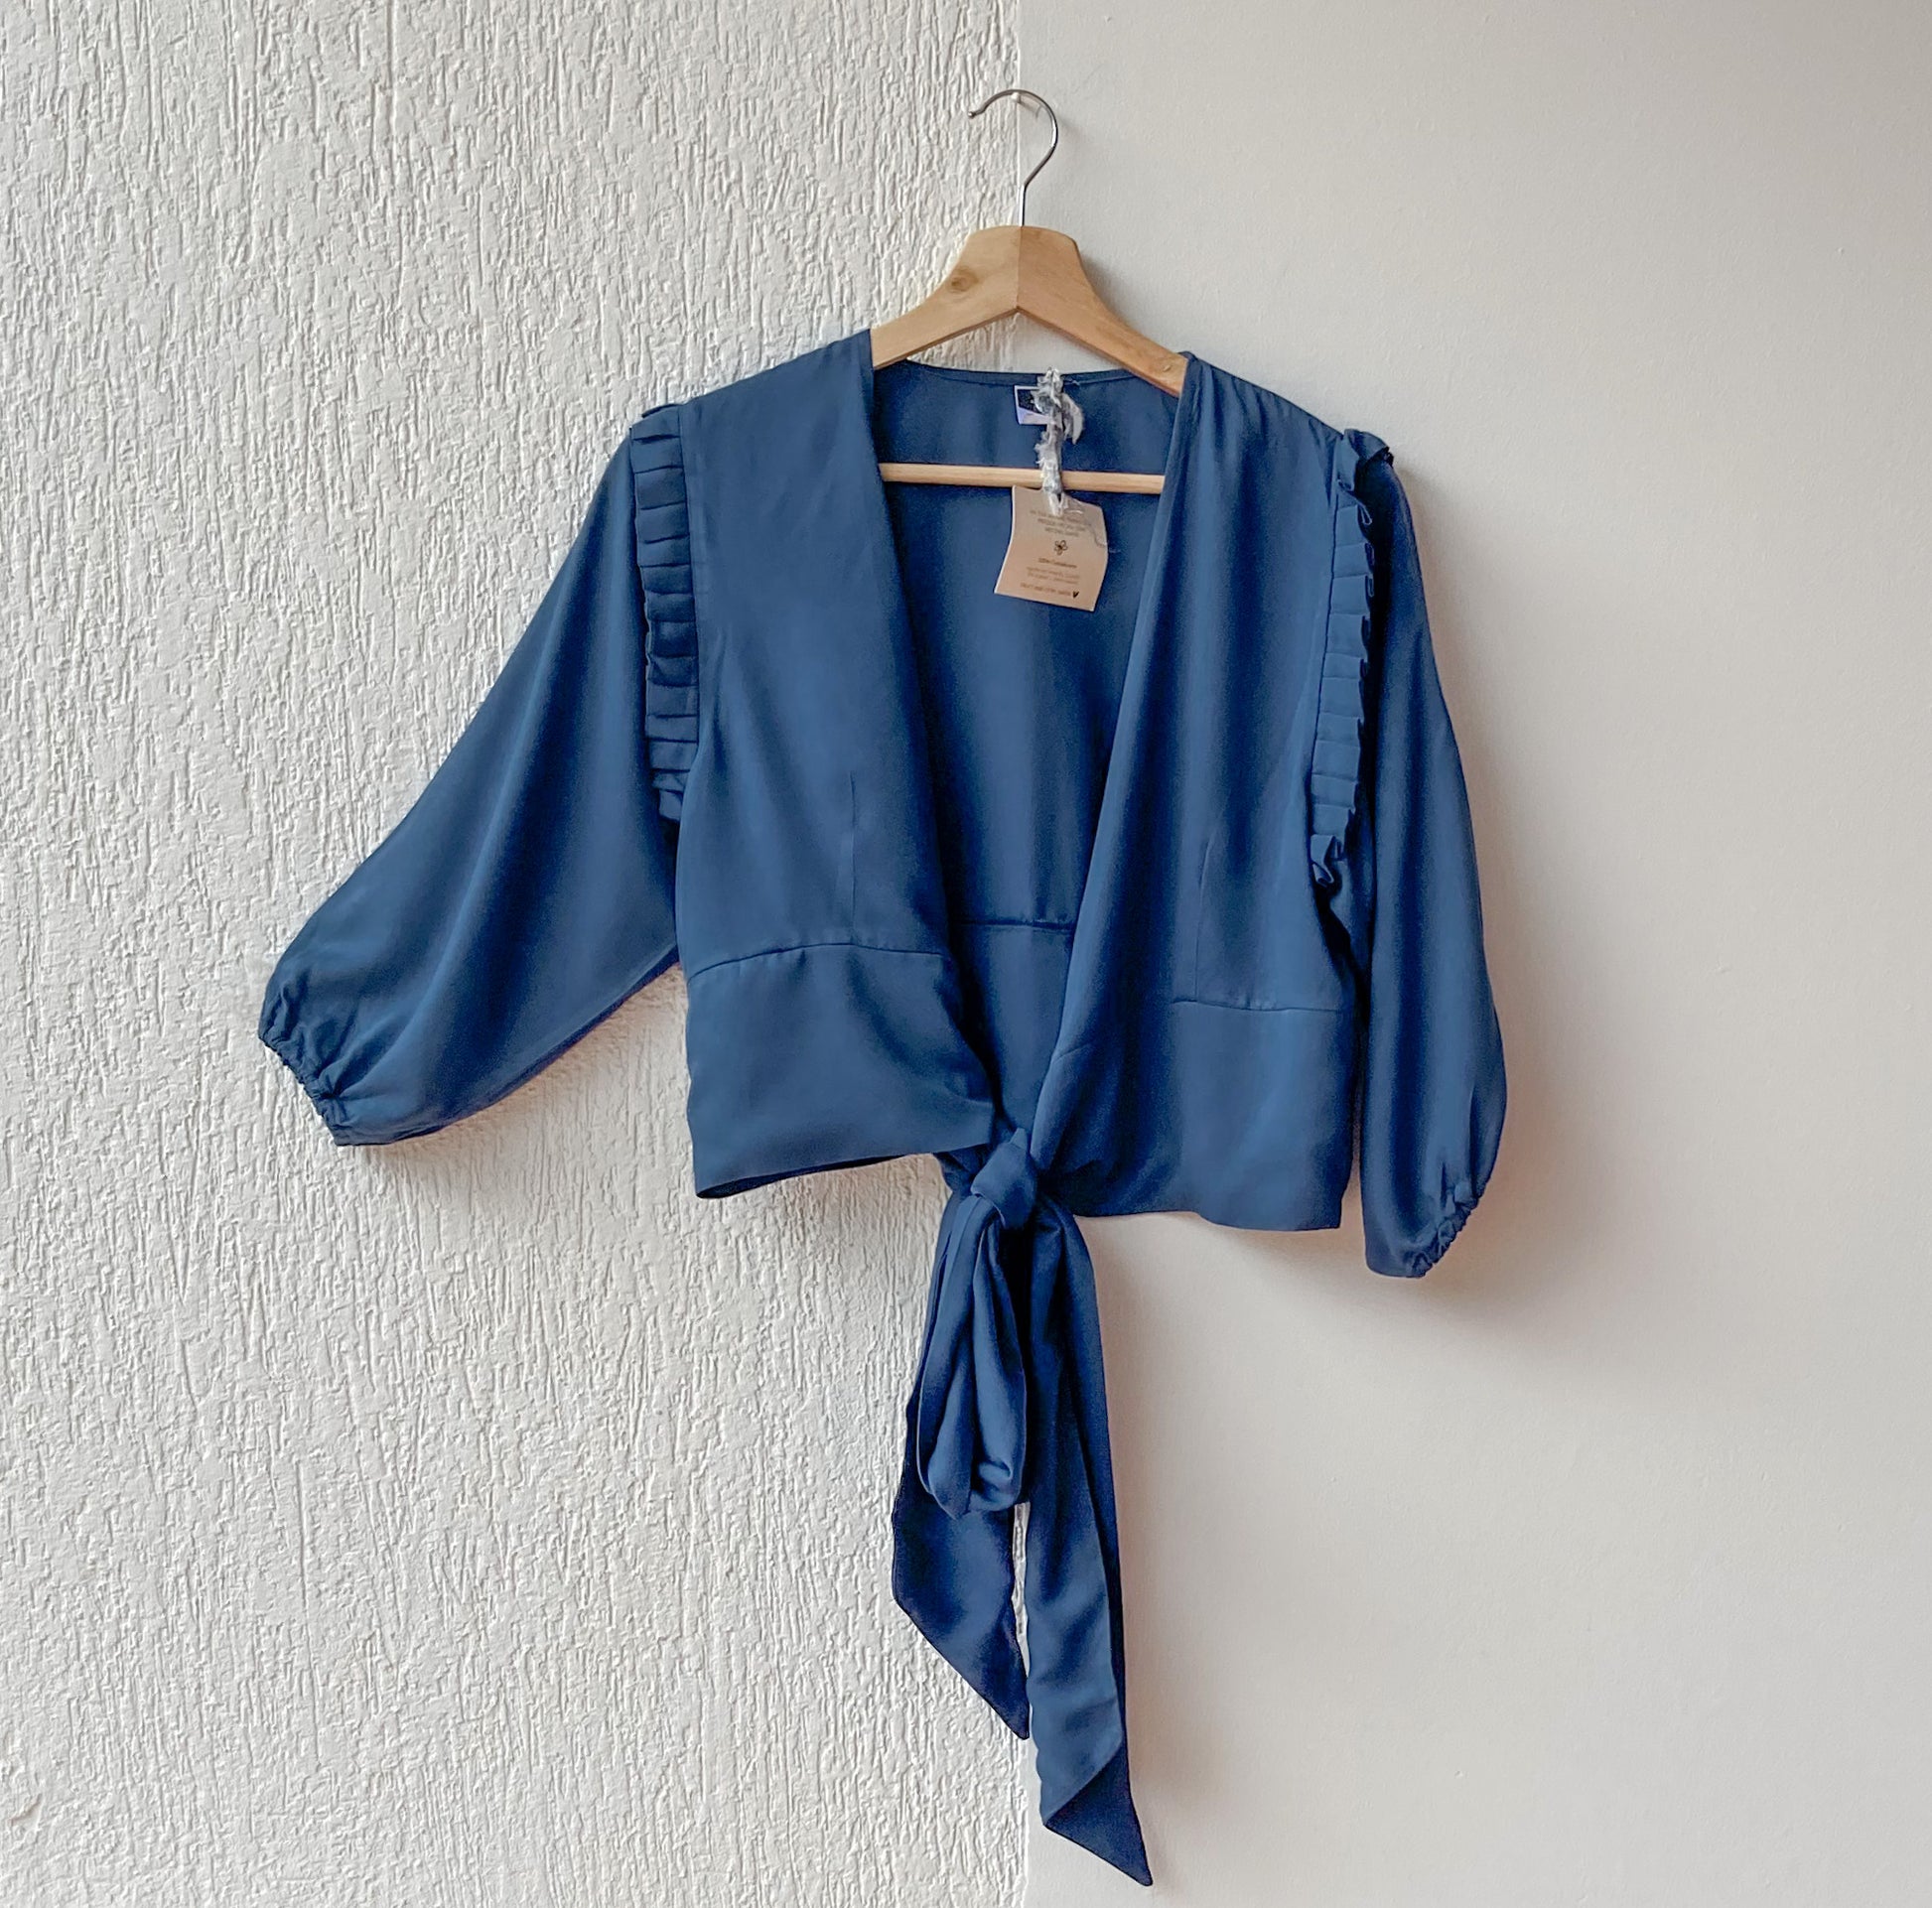 Blusa manga 3/4 con resorte en el puño, boleros en la siza y amarrado, 100% Colombiano. Color azul